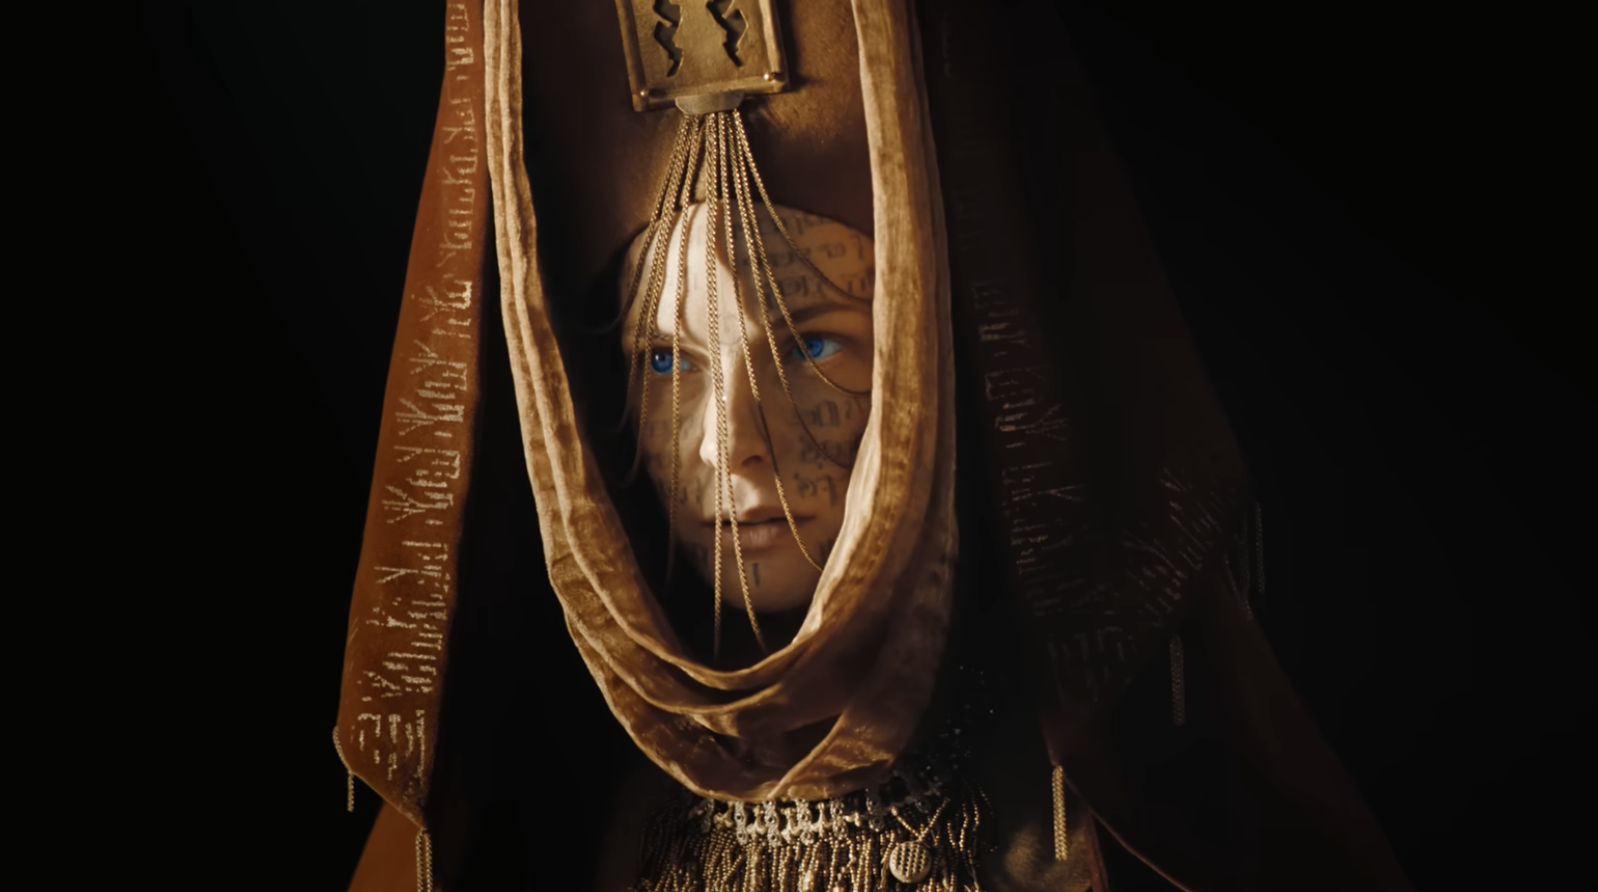 Personaje con tatuajes en el rostro viste capa dorada con texto, escena cinematográfica